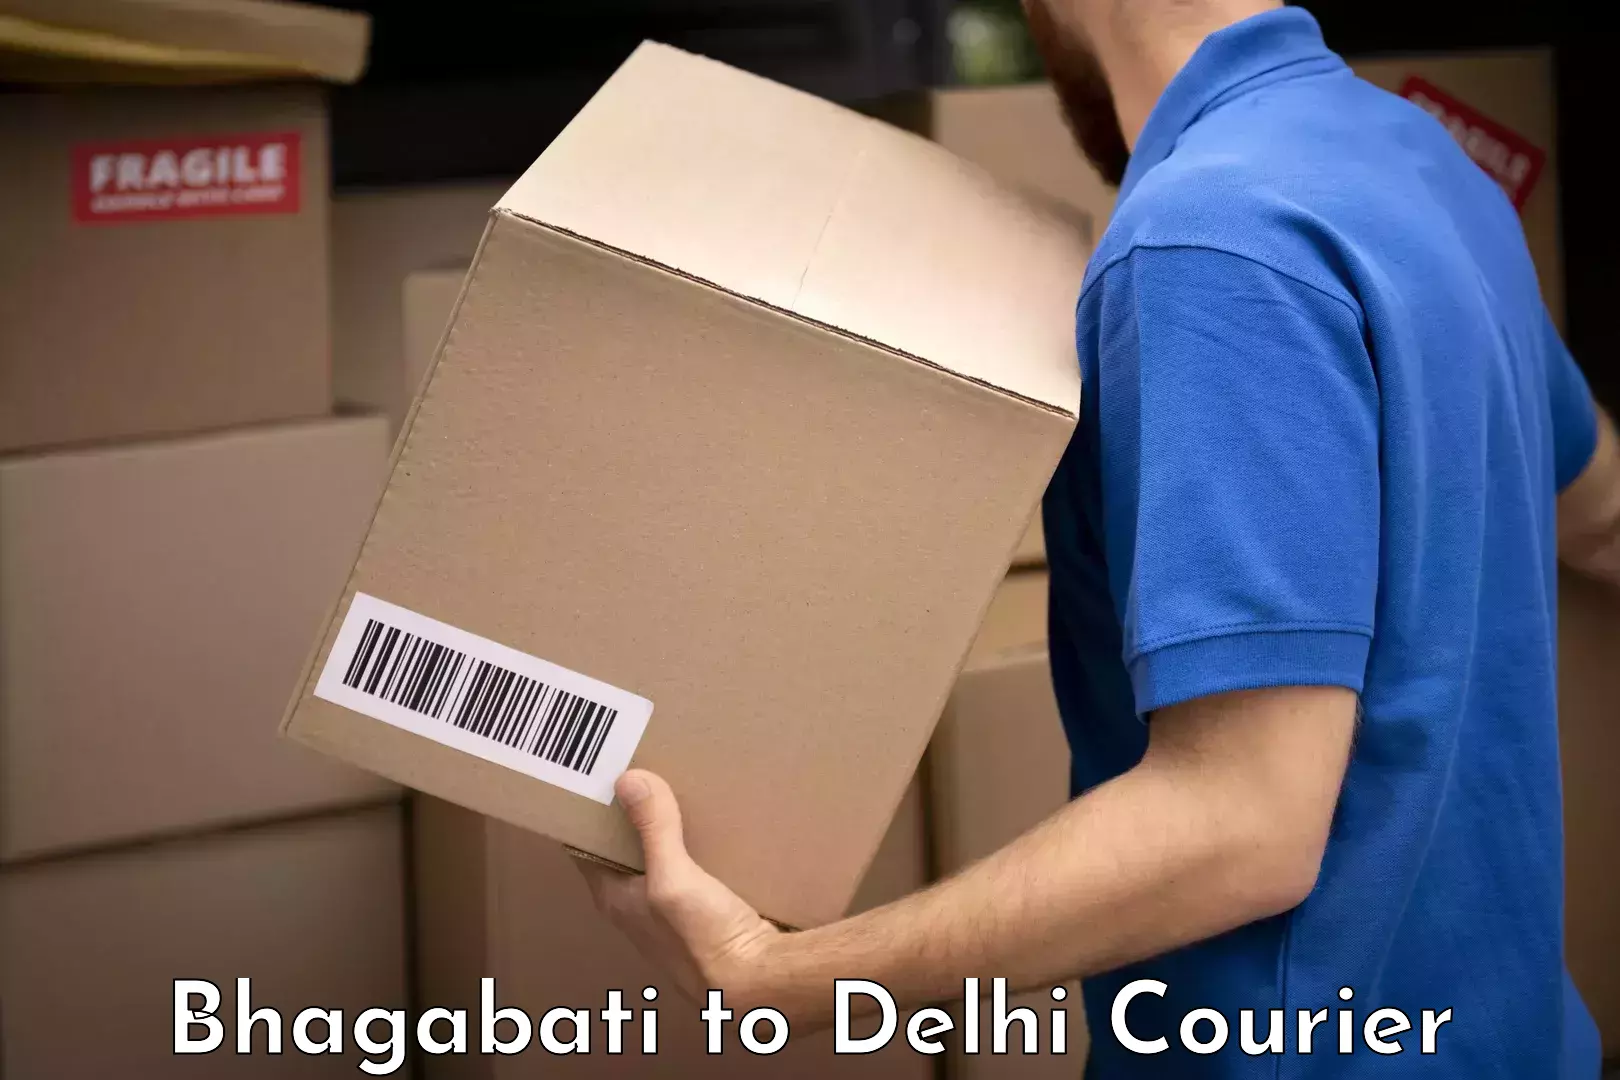 Luggage transport consultancy Bhagabati to East Delhi